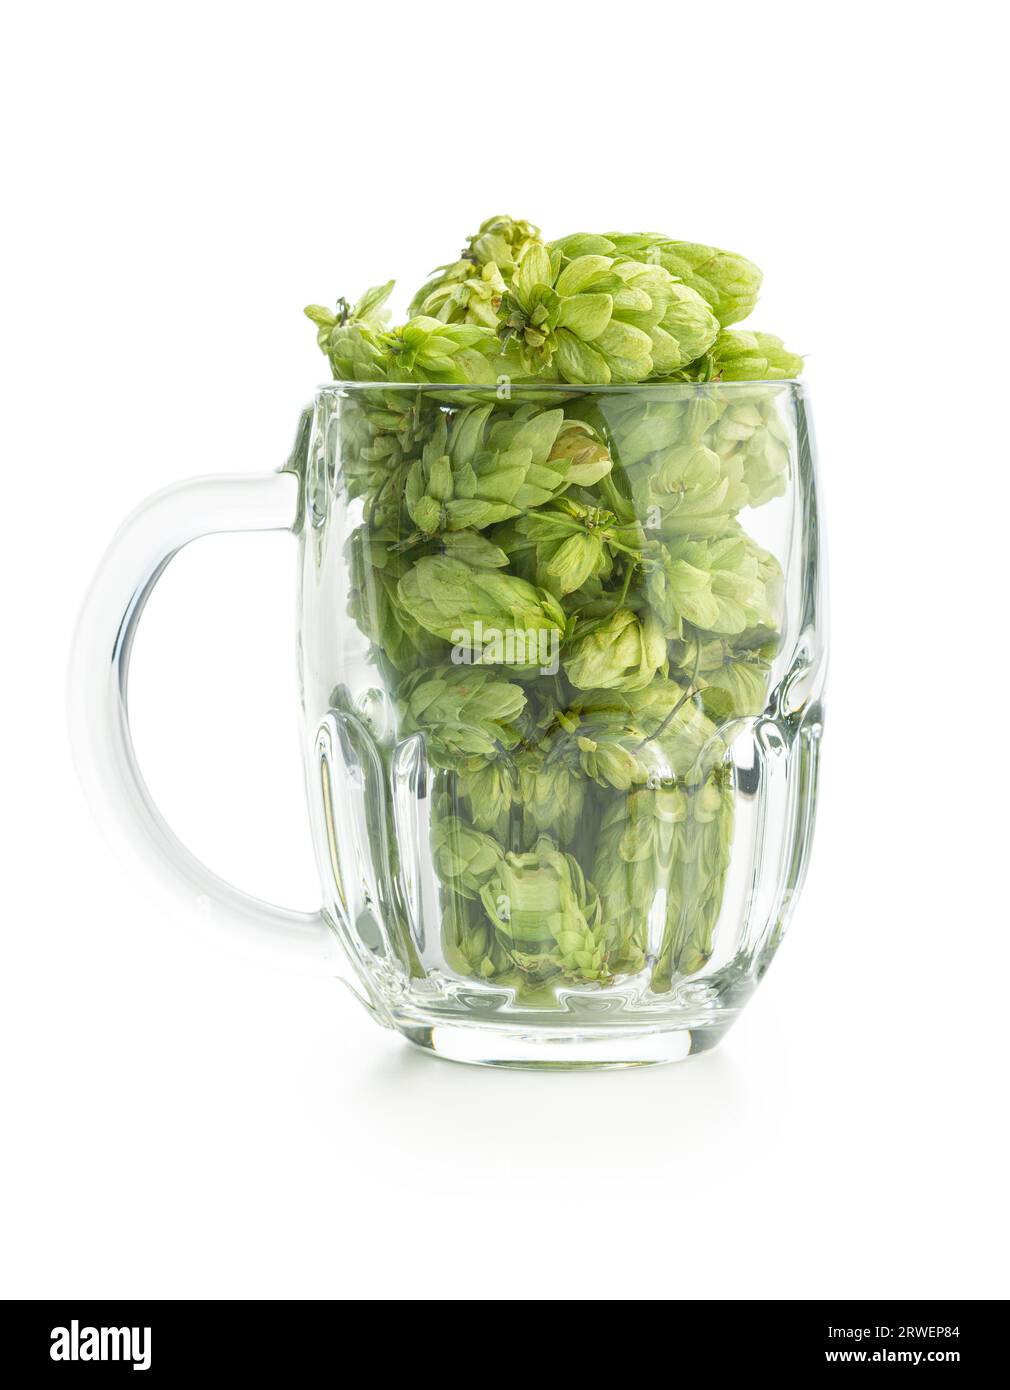 Récolte de houblon vert dans le verre à bière isolé sur le fond blanc. Banque D'Images